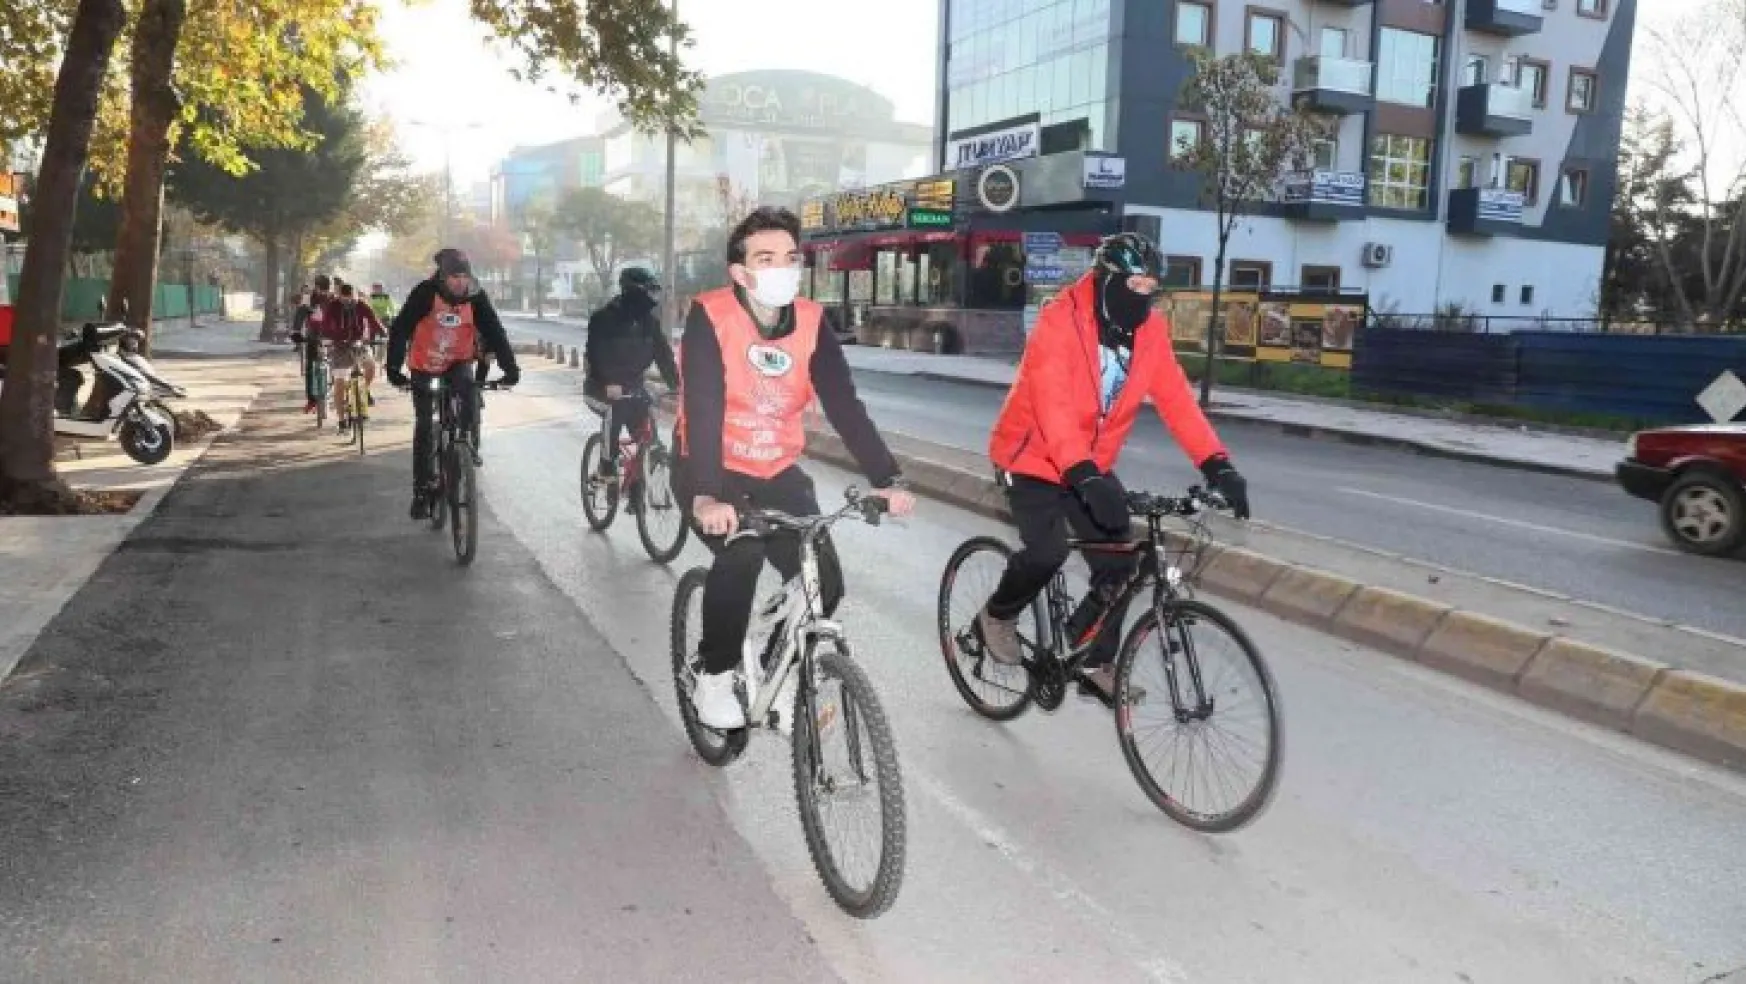 Erozyonla mücadeleye bisiklet turu ile dikkat çektiler